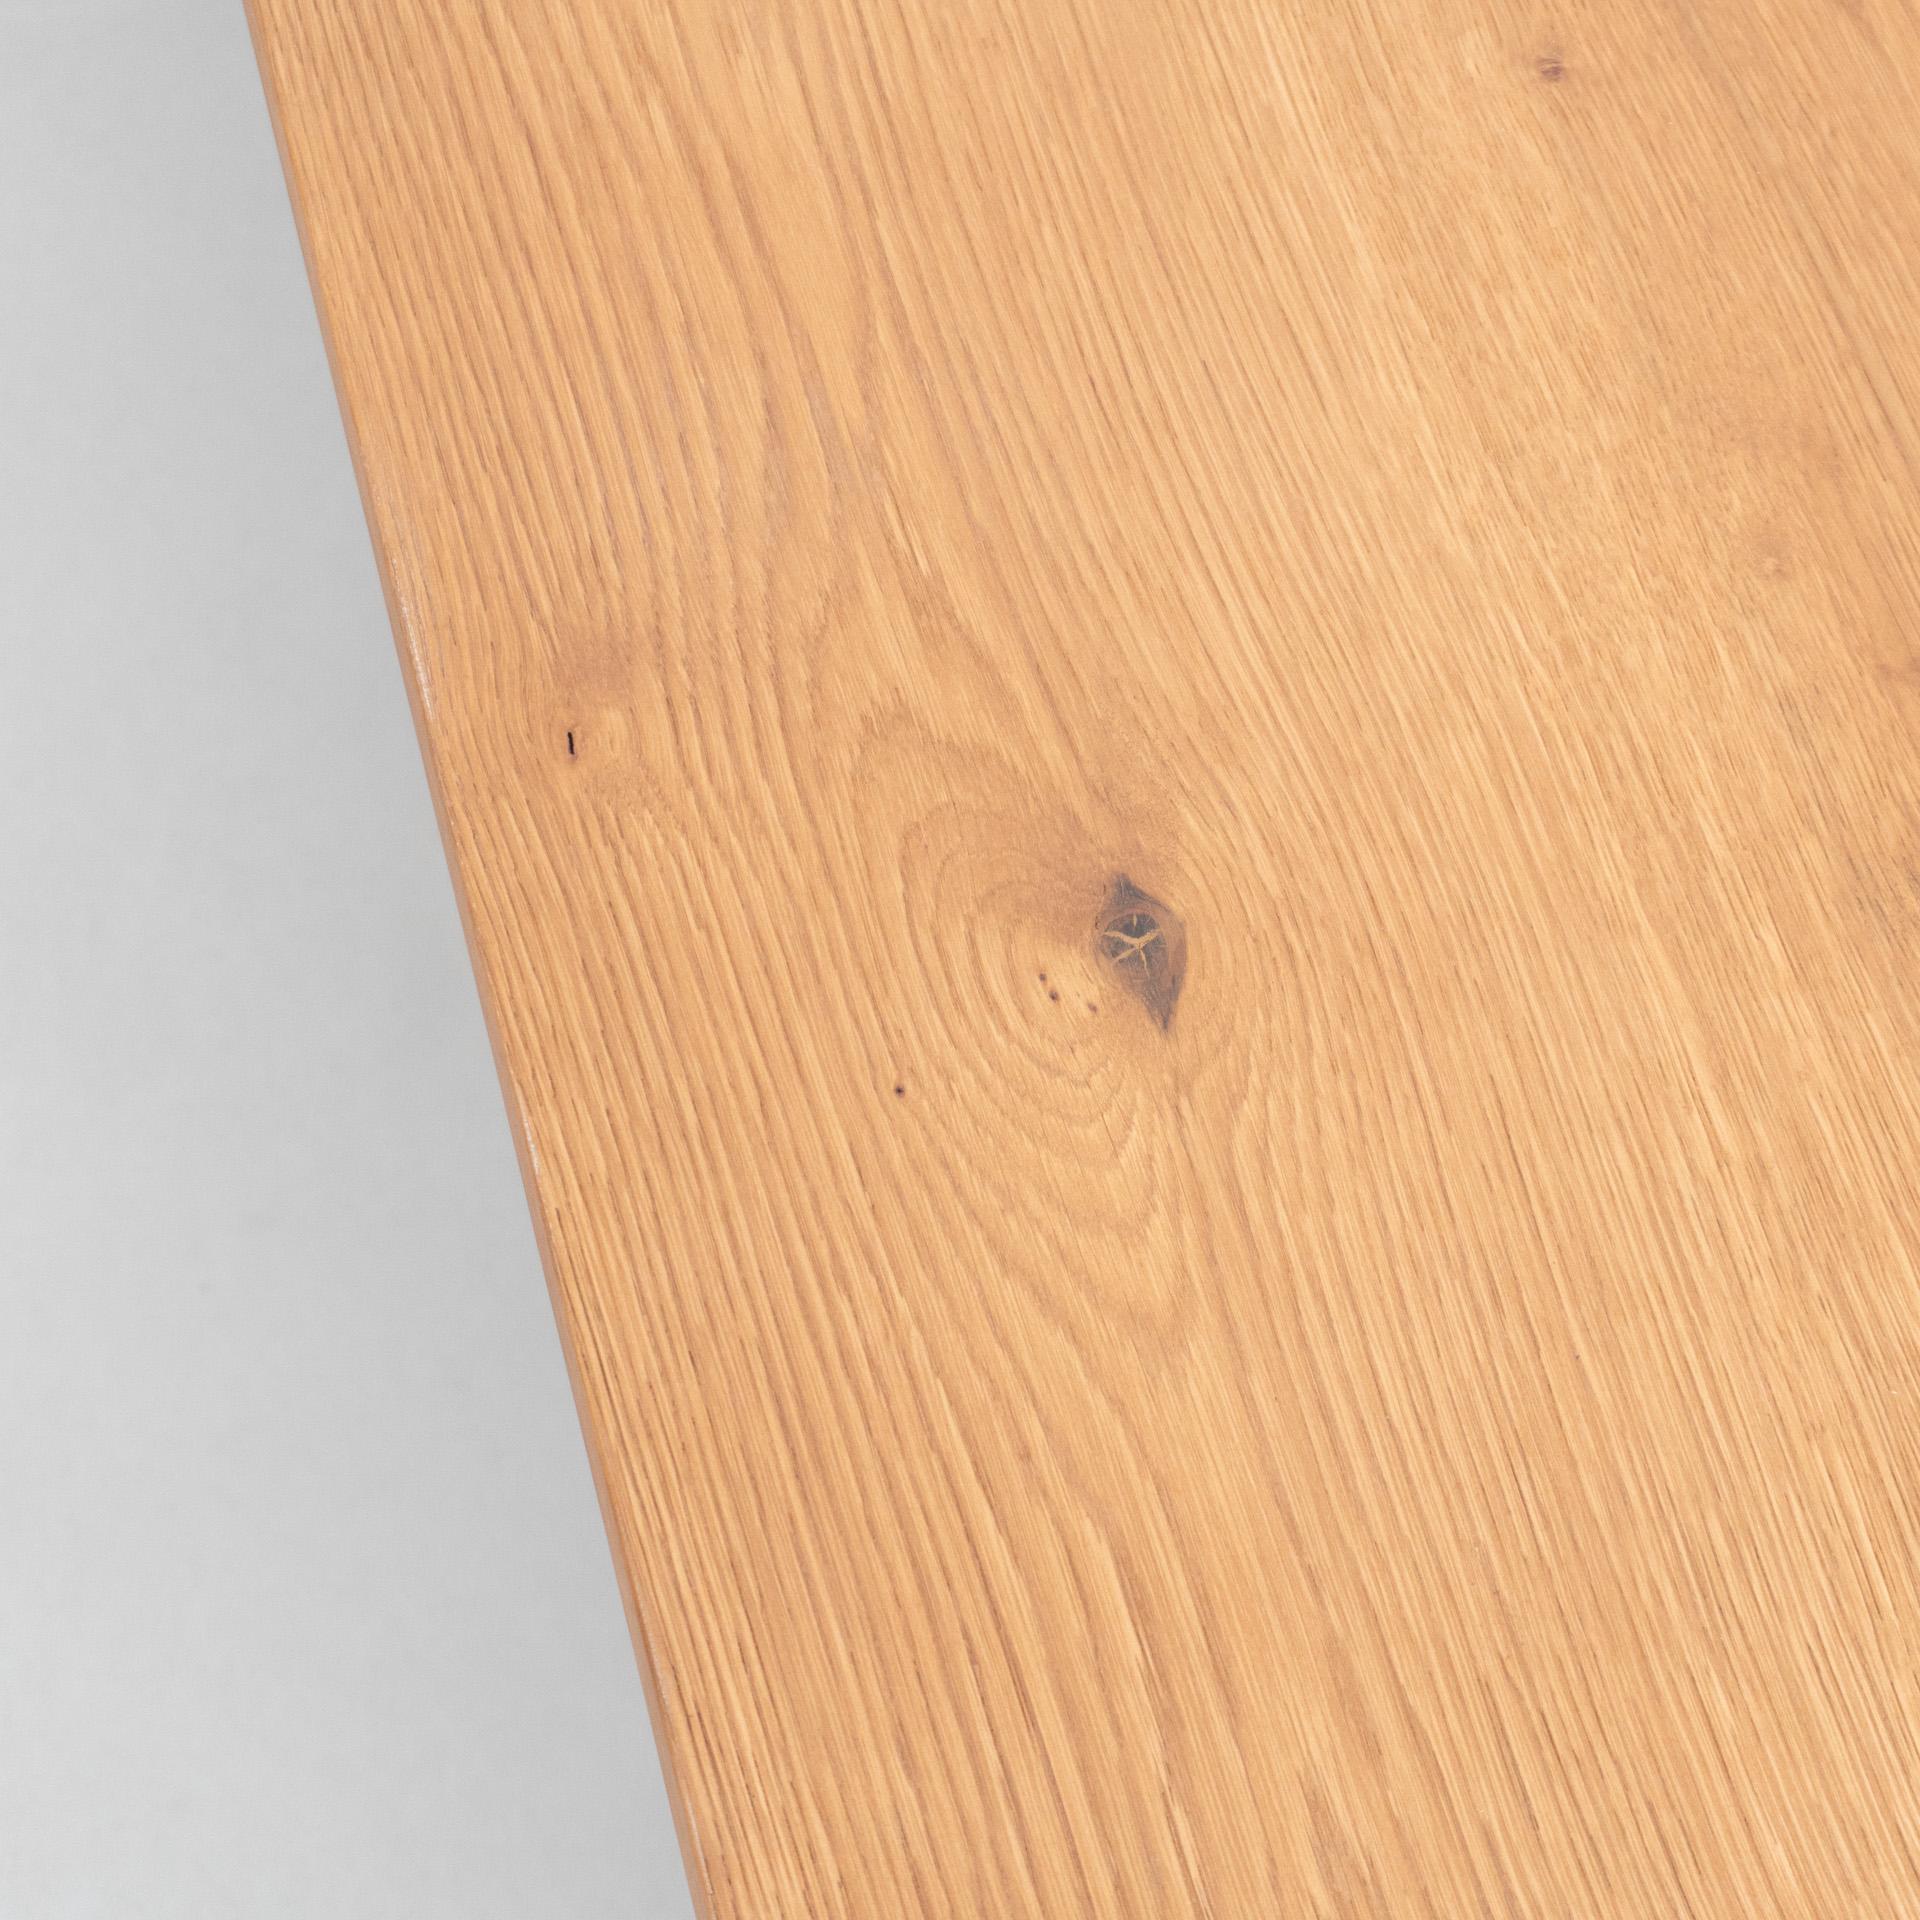 Dada Est. Contemporary Solid Oak Low Table 1